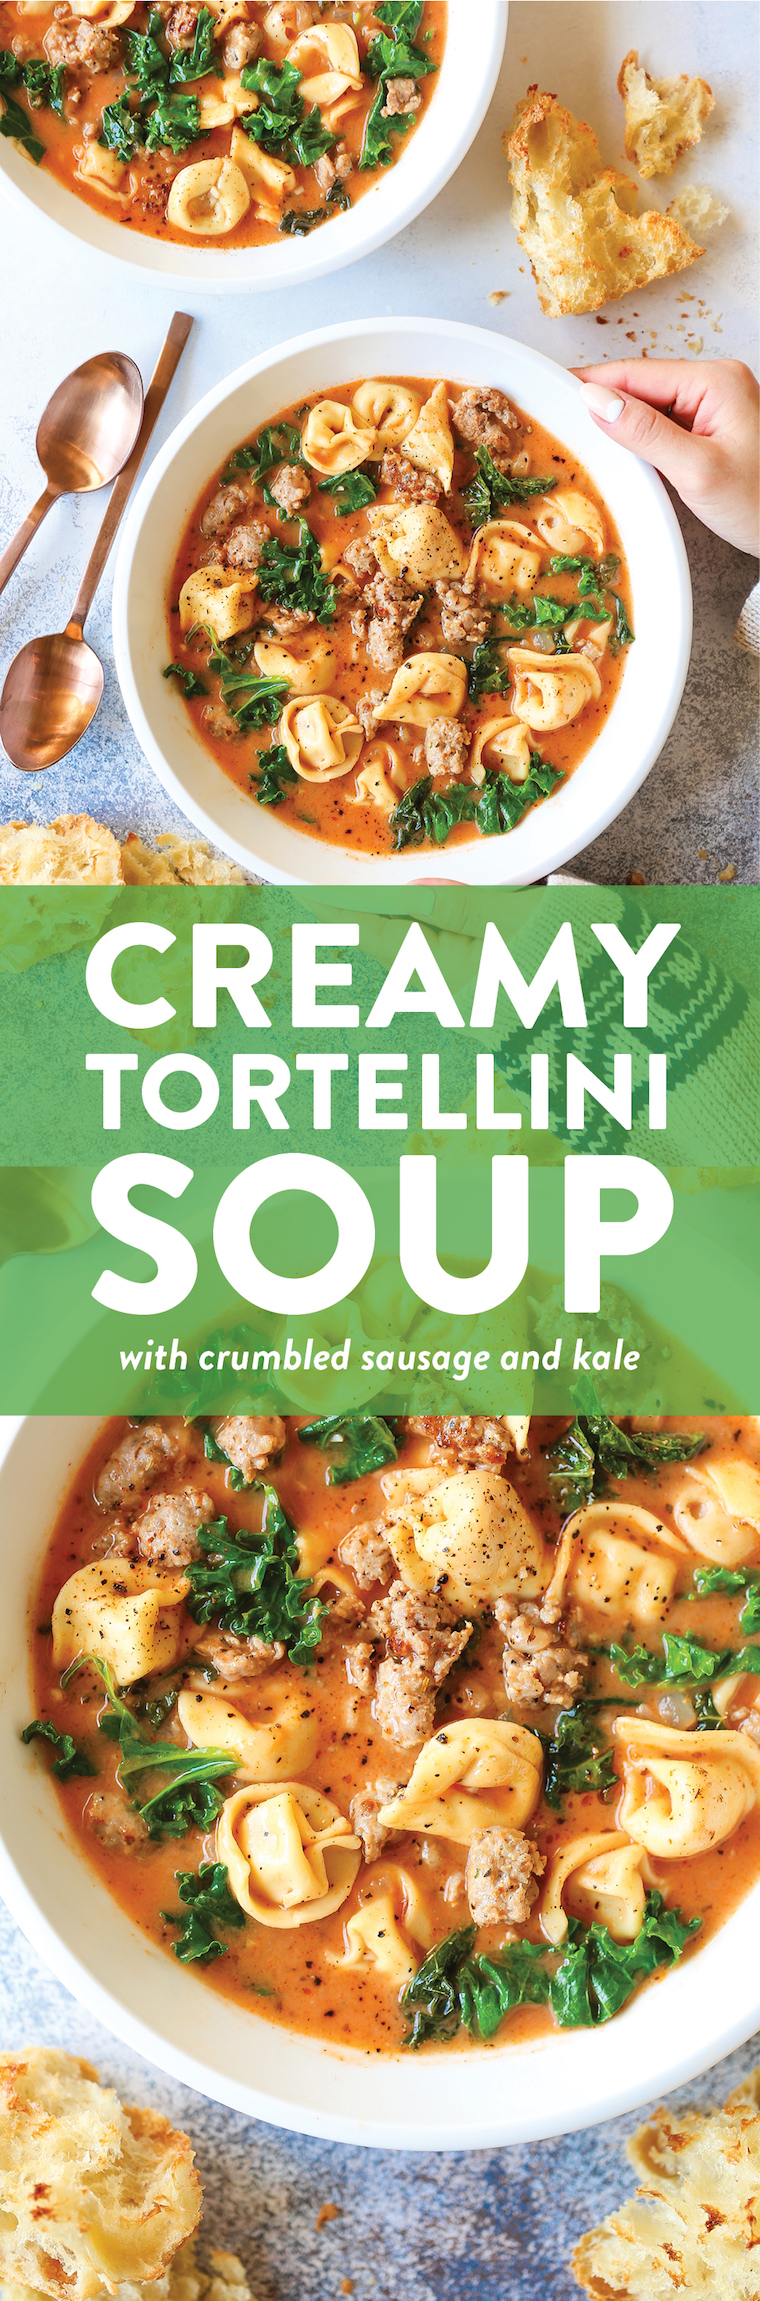 https://s23209.pcdn.co/wp-content/uploads/2019/01/Creamy-Tortellini-Soup.jpg